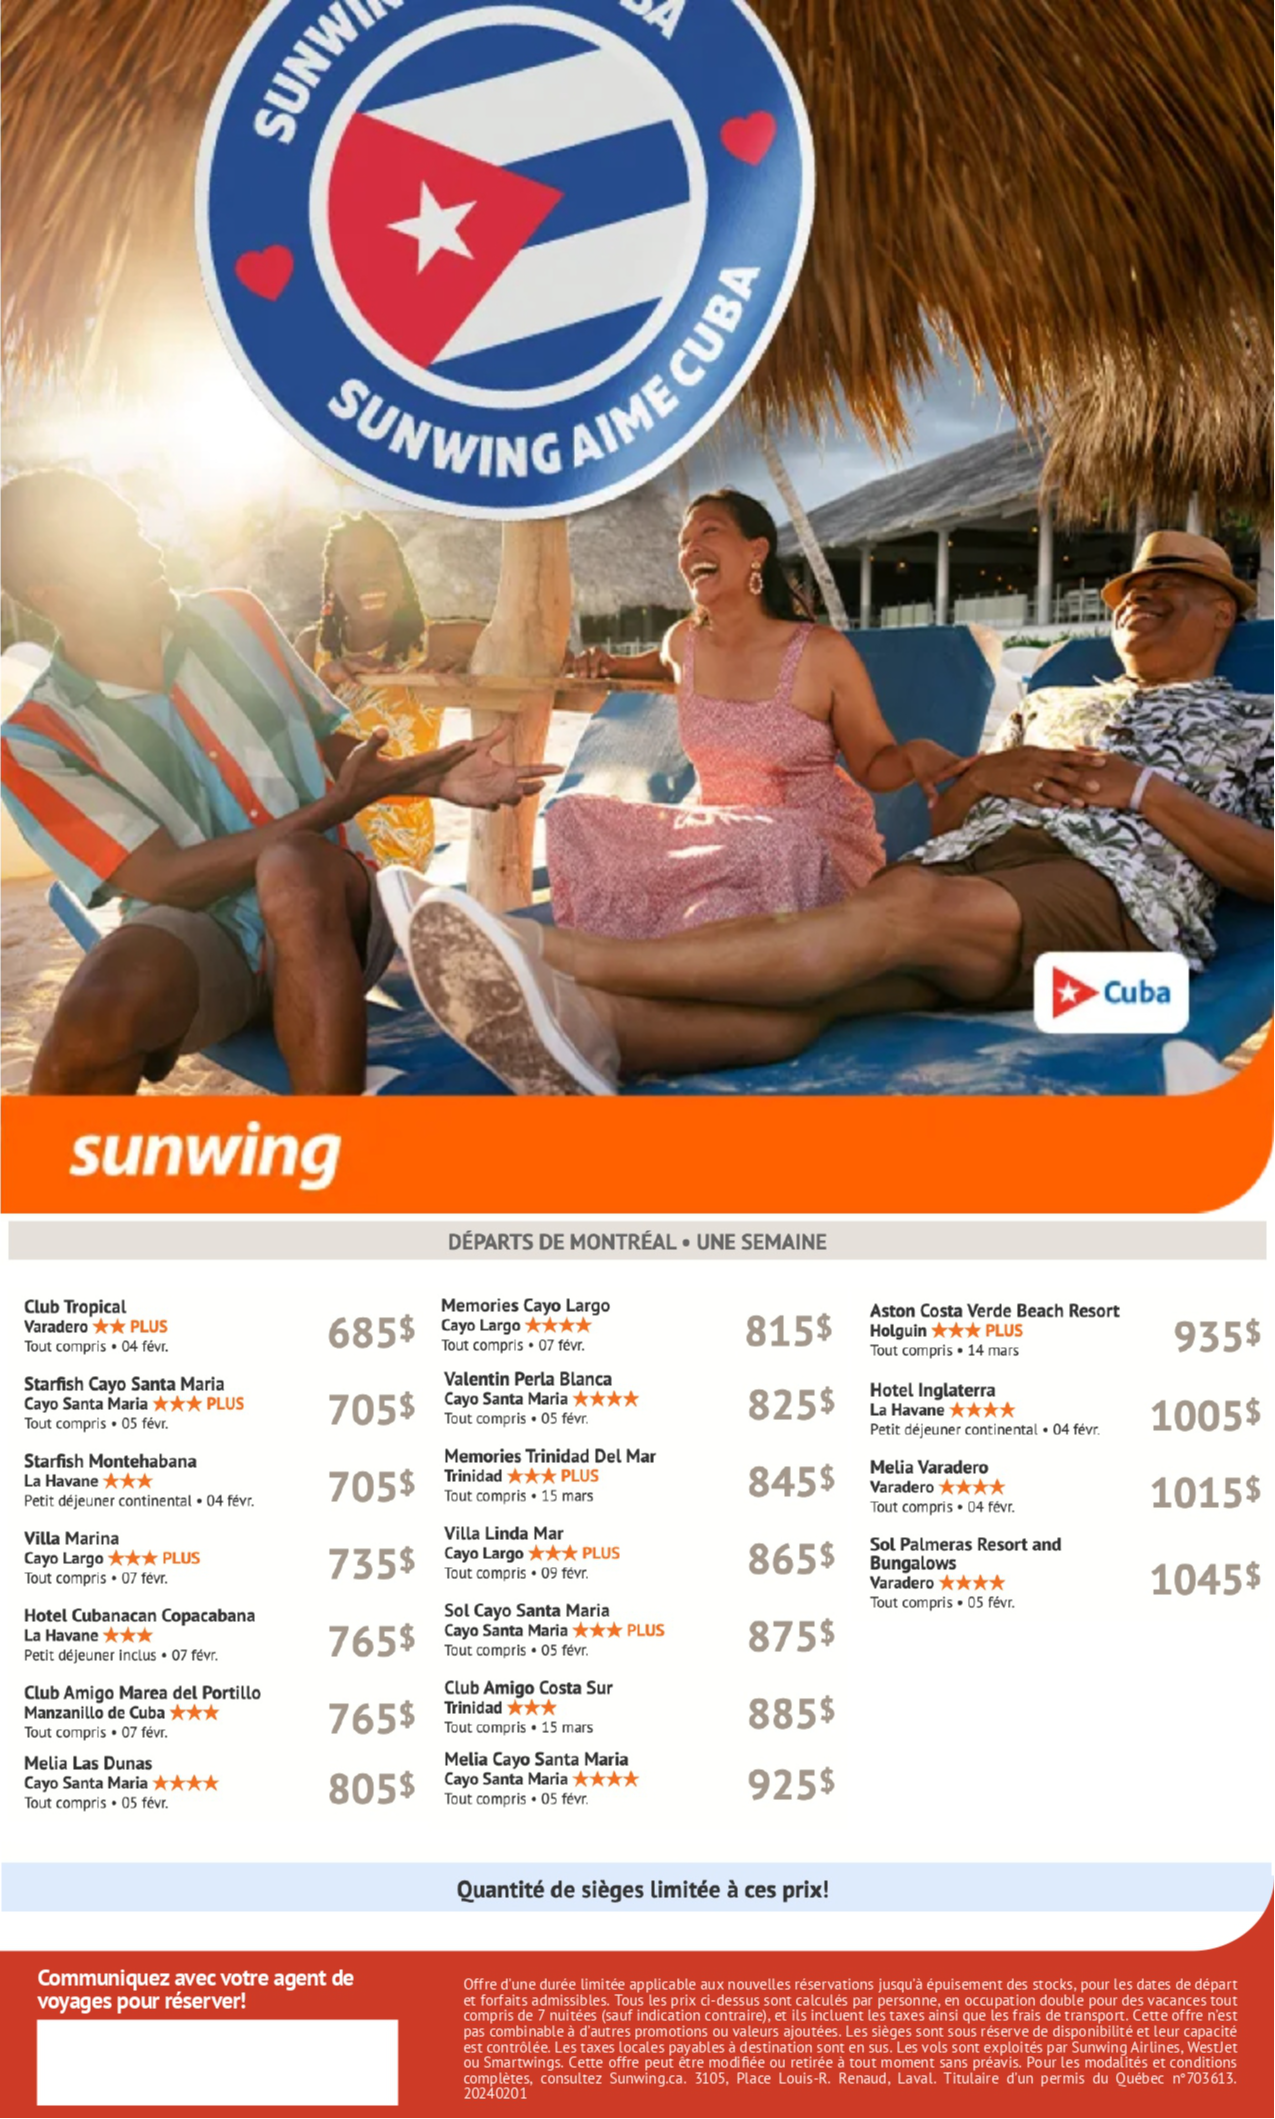 Promotions Sunwing Aime Cuba avec Voyages Aqua Terra